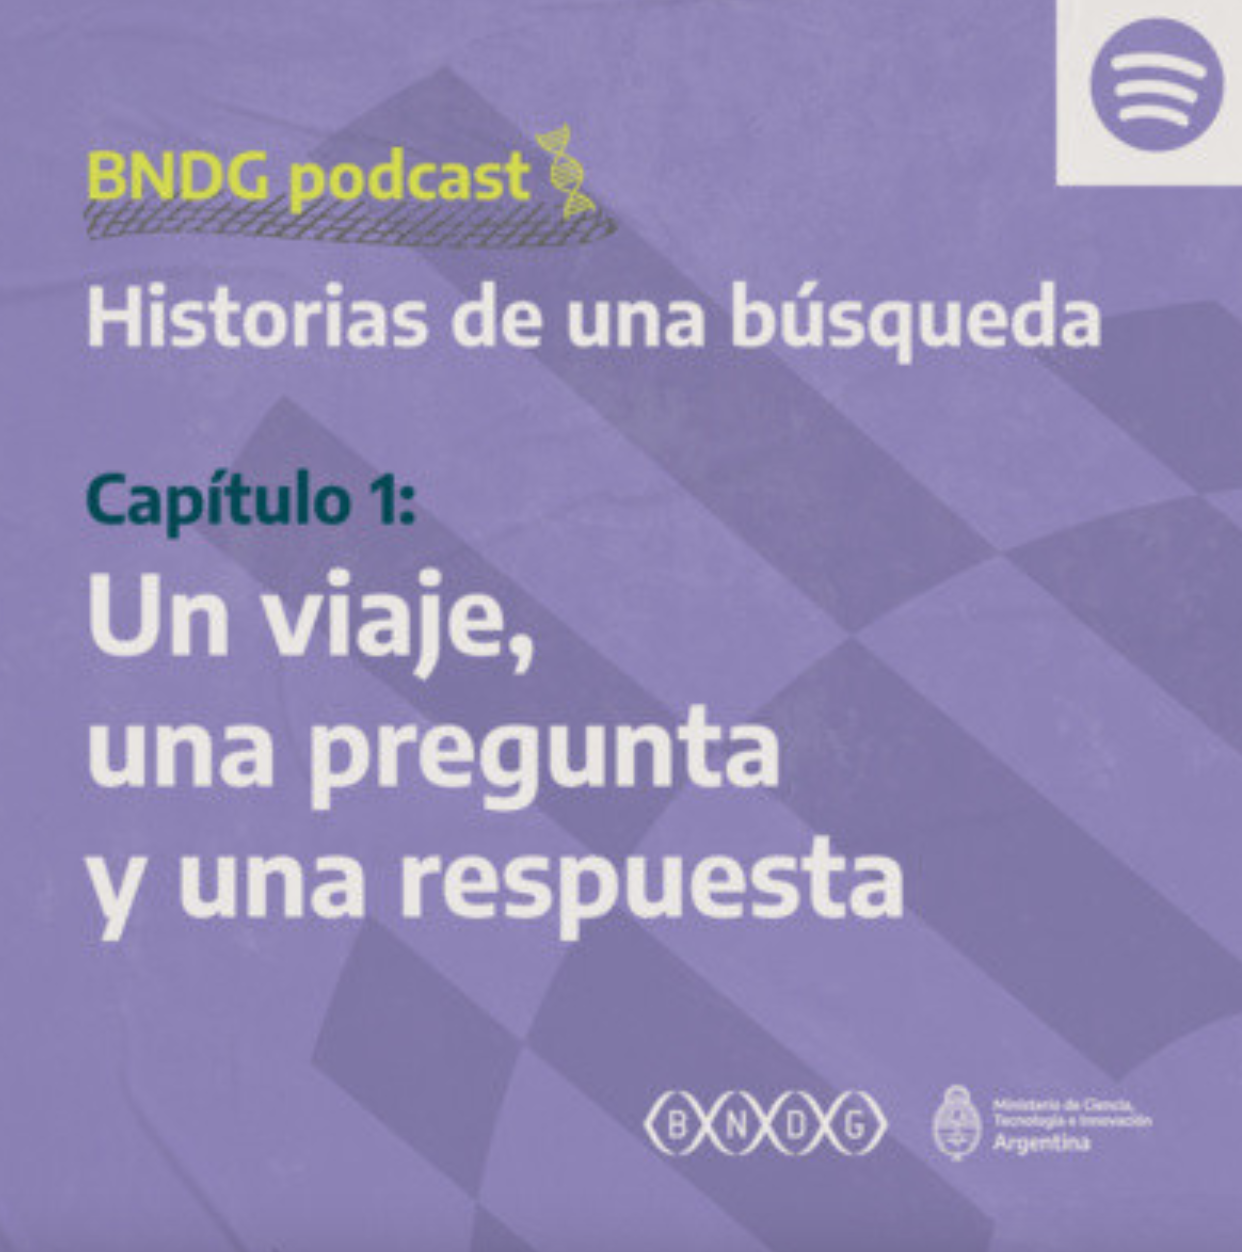 BNDG Podcast